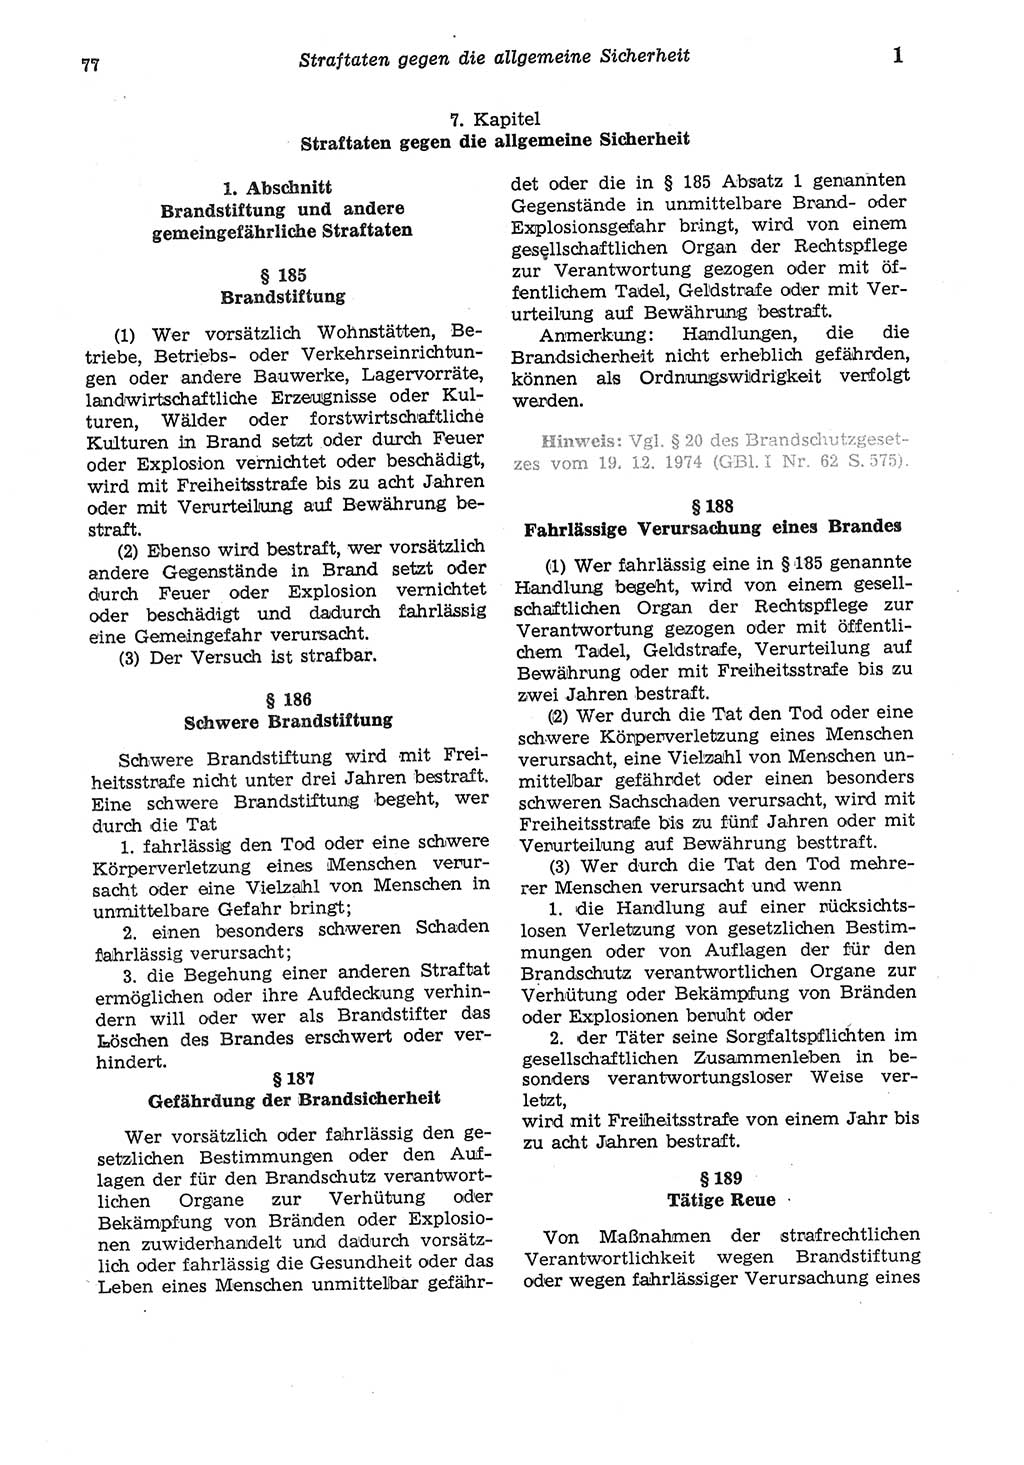 Strafgesetzbuch (StGB) der Deutschen Demokratischen Republik (DDR) und angrenzende Gesetze und Bestimmungen 1975, Seite 77 (StGB DDR Ges. Best. 1975, S. 77)